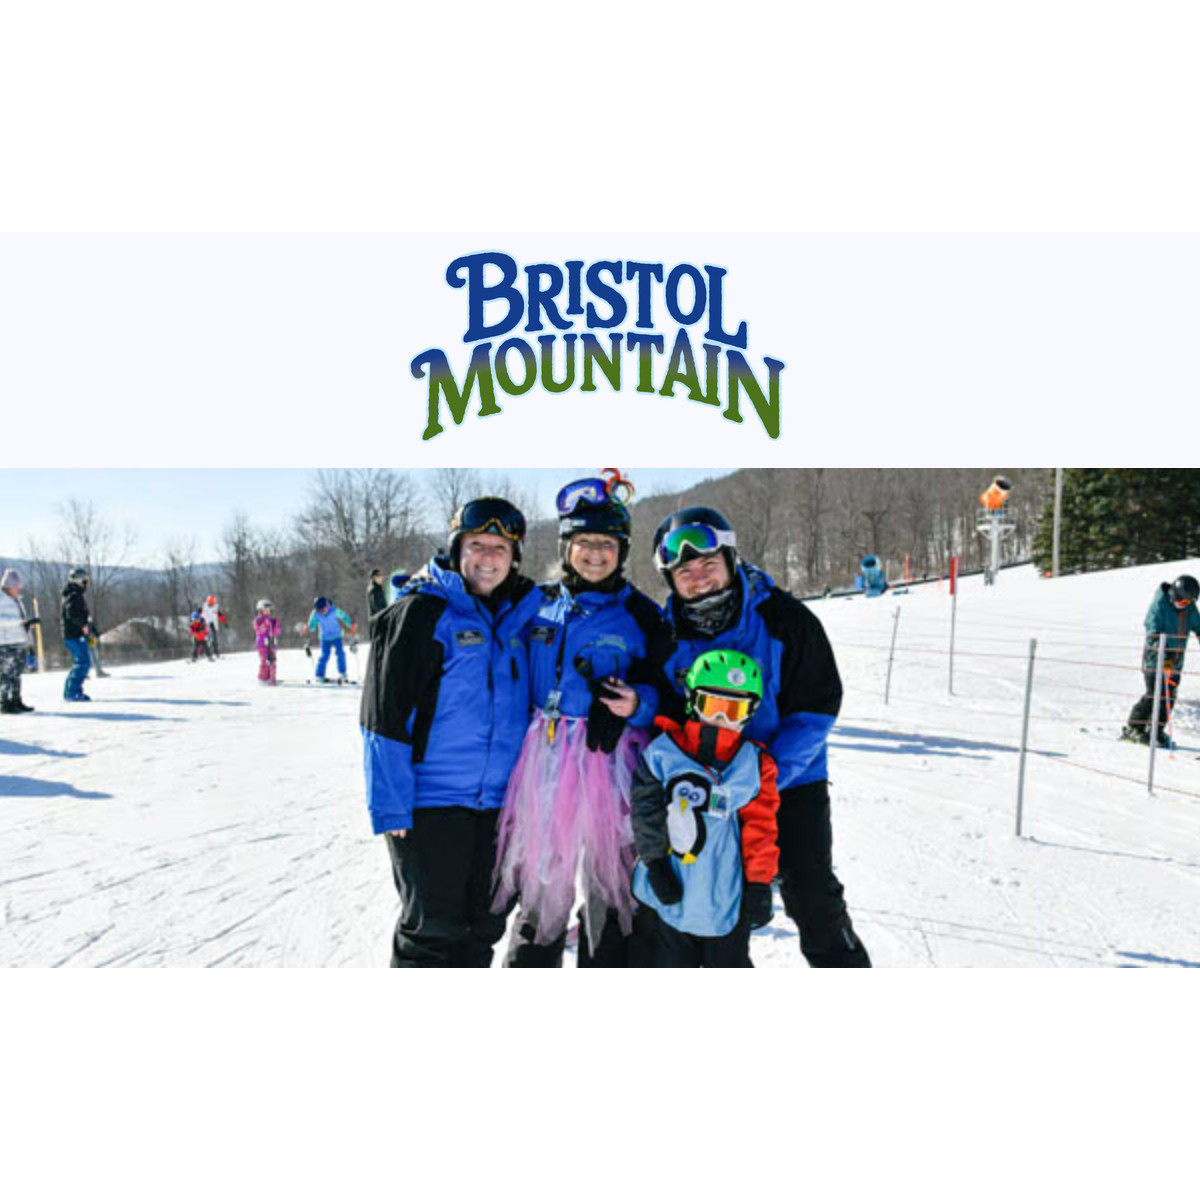 Bristol Mountain Logo and Family